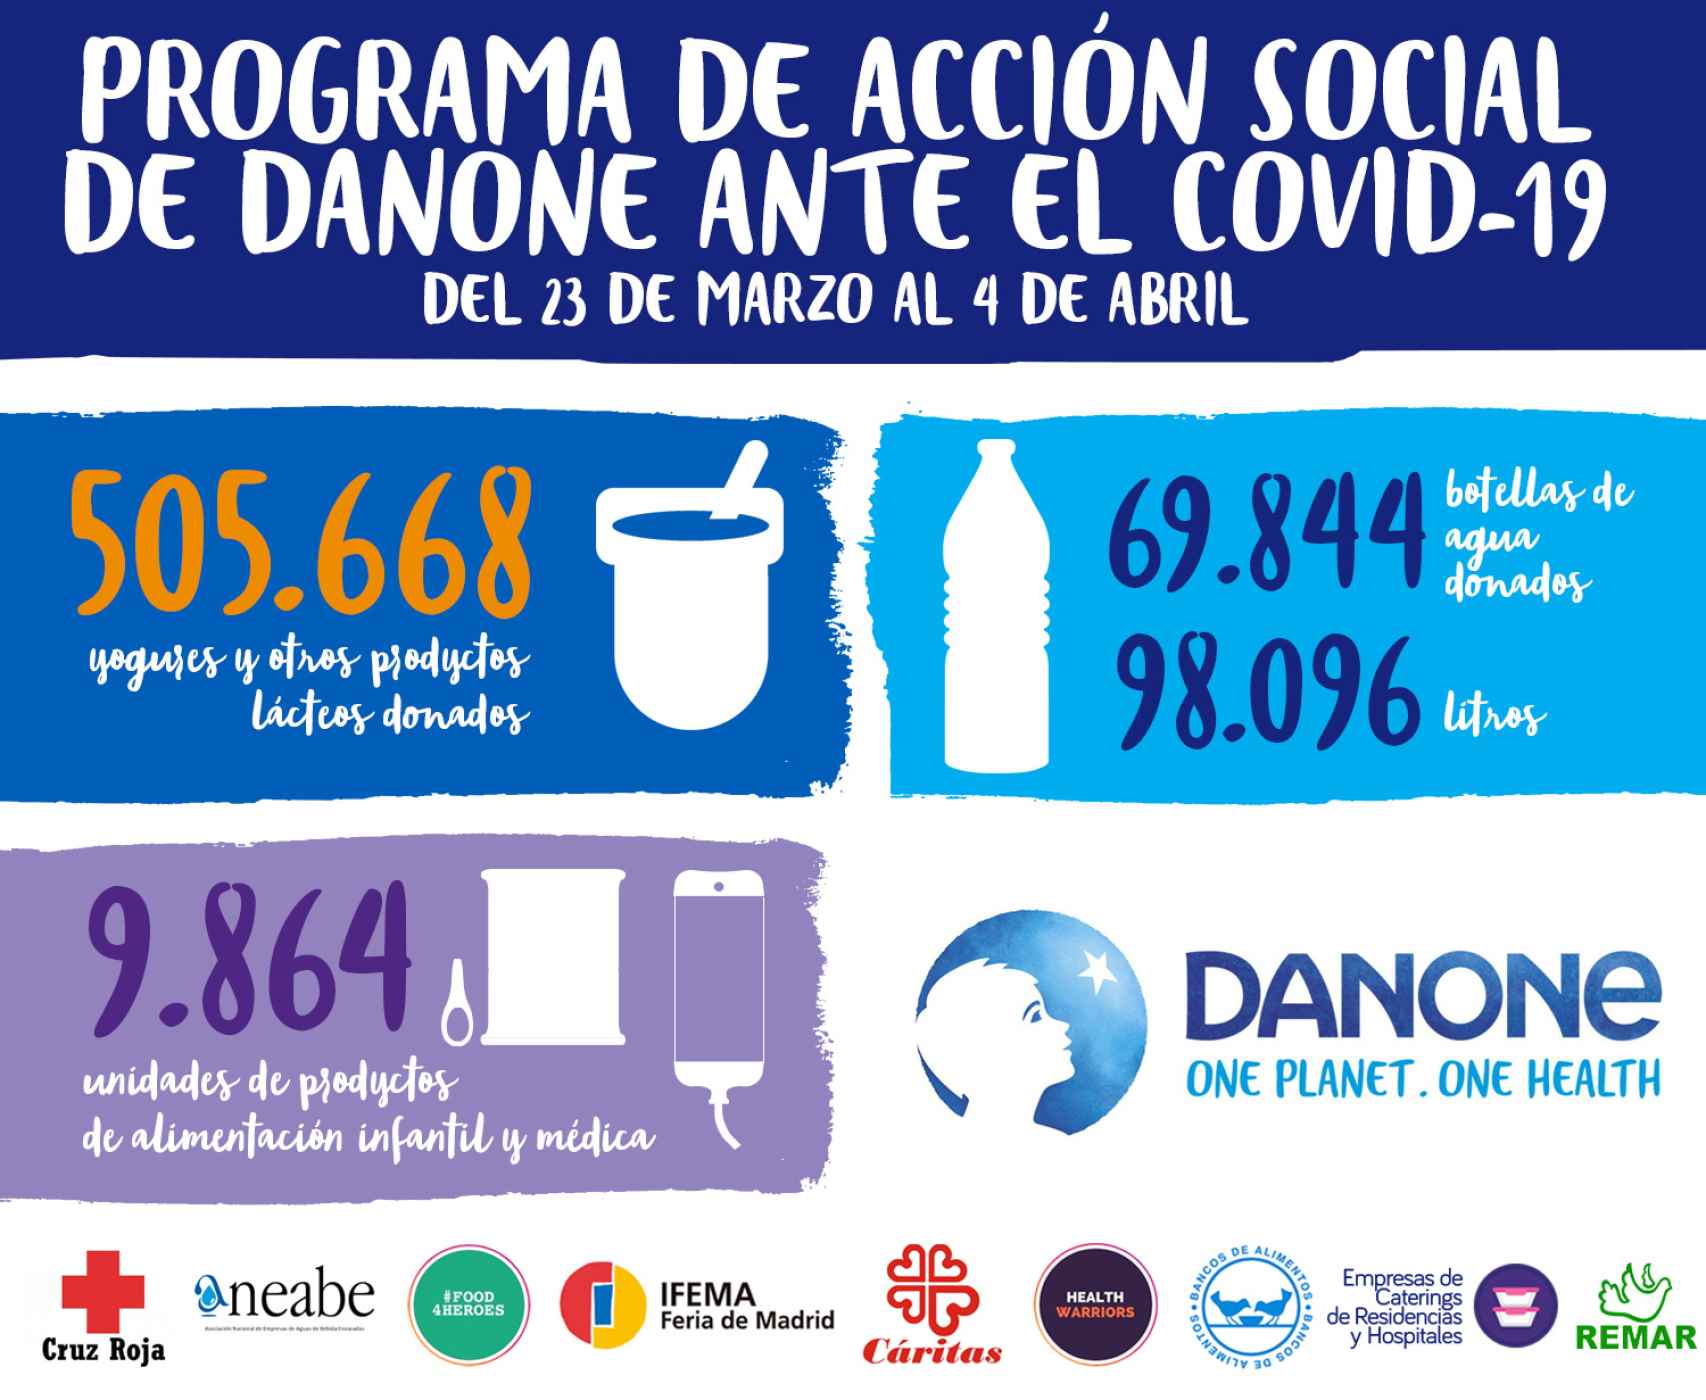 Resumen de la Acción Social Danone hasta el 4 de abril.